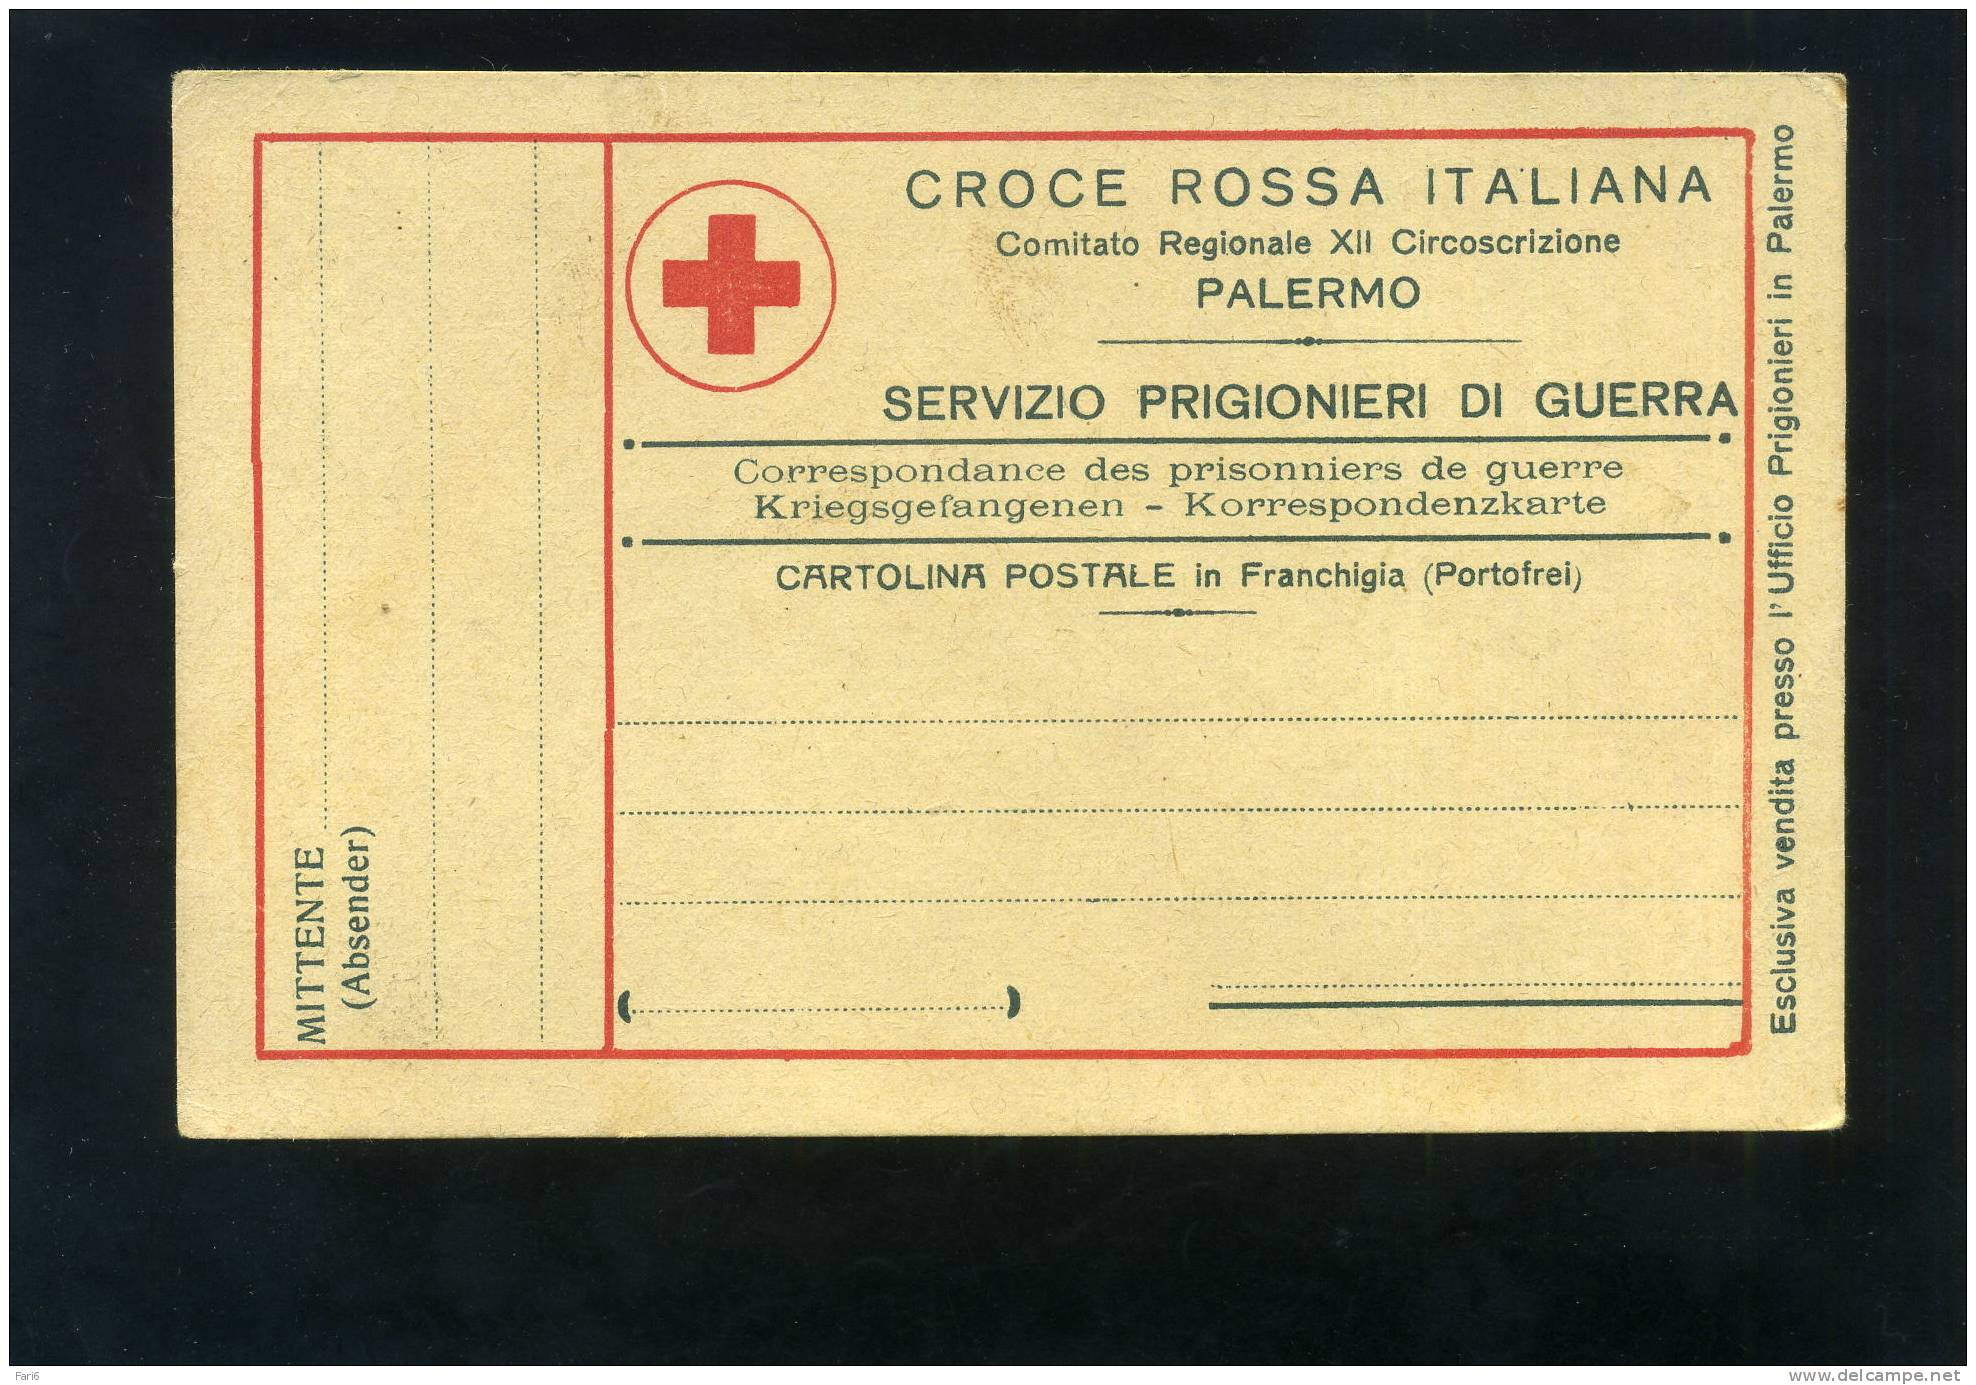 T0102 CARTOLINA FRANCHIGIA CROCE ROSSA PALERMO SERVIZIO PRIGIONIERI DI GUERRA - Croce Rossa